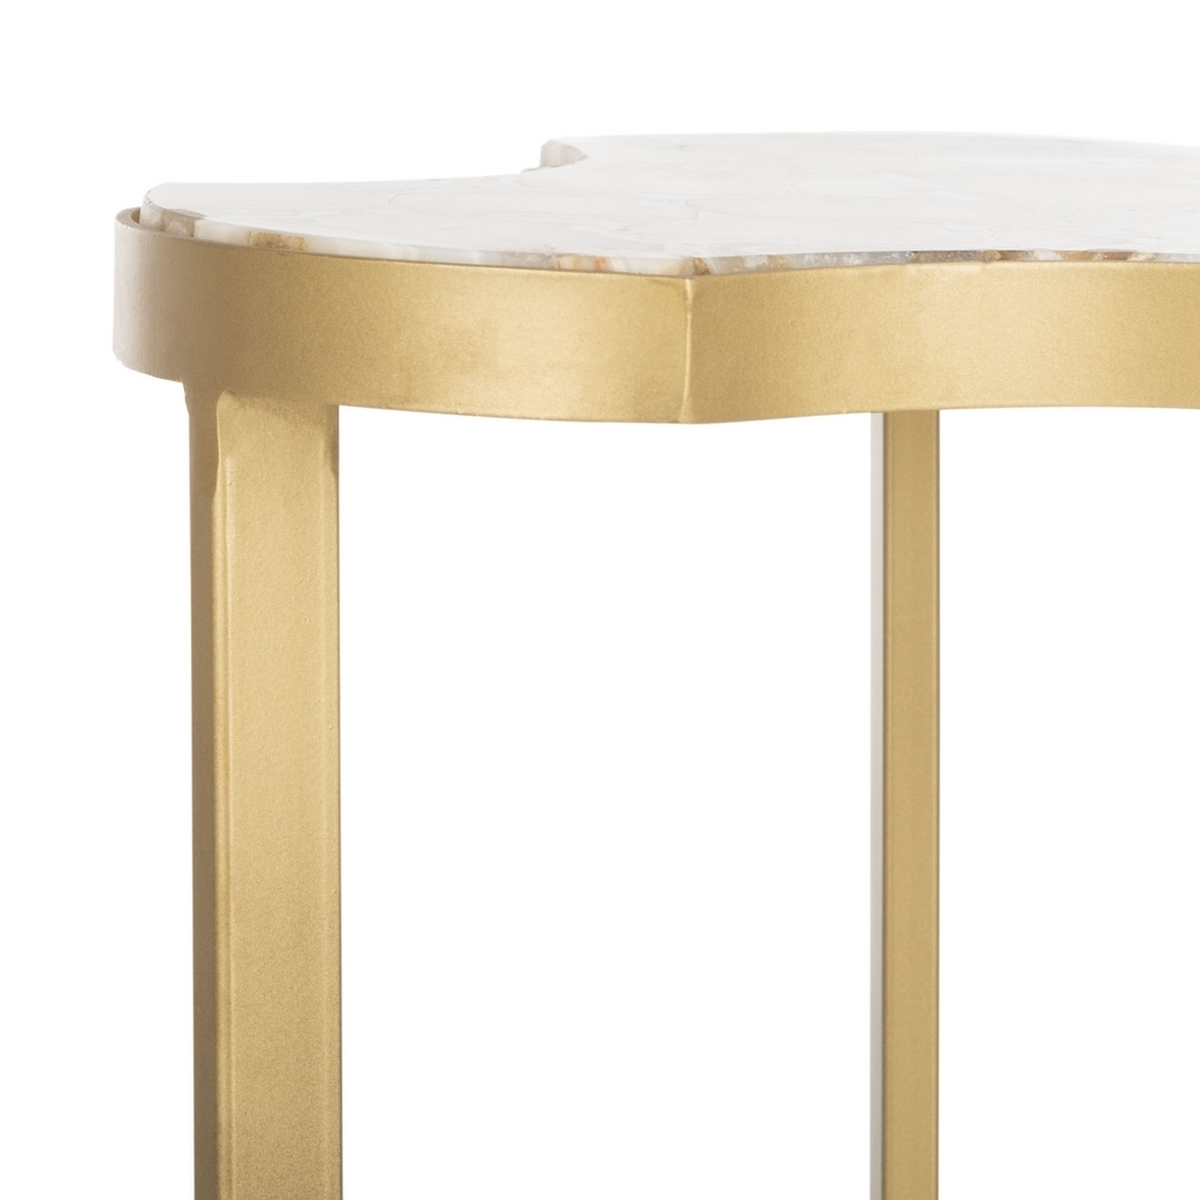 Suki Agate Tripod Accent Table - White/Gold - Arlo Home - Image 1